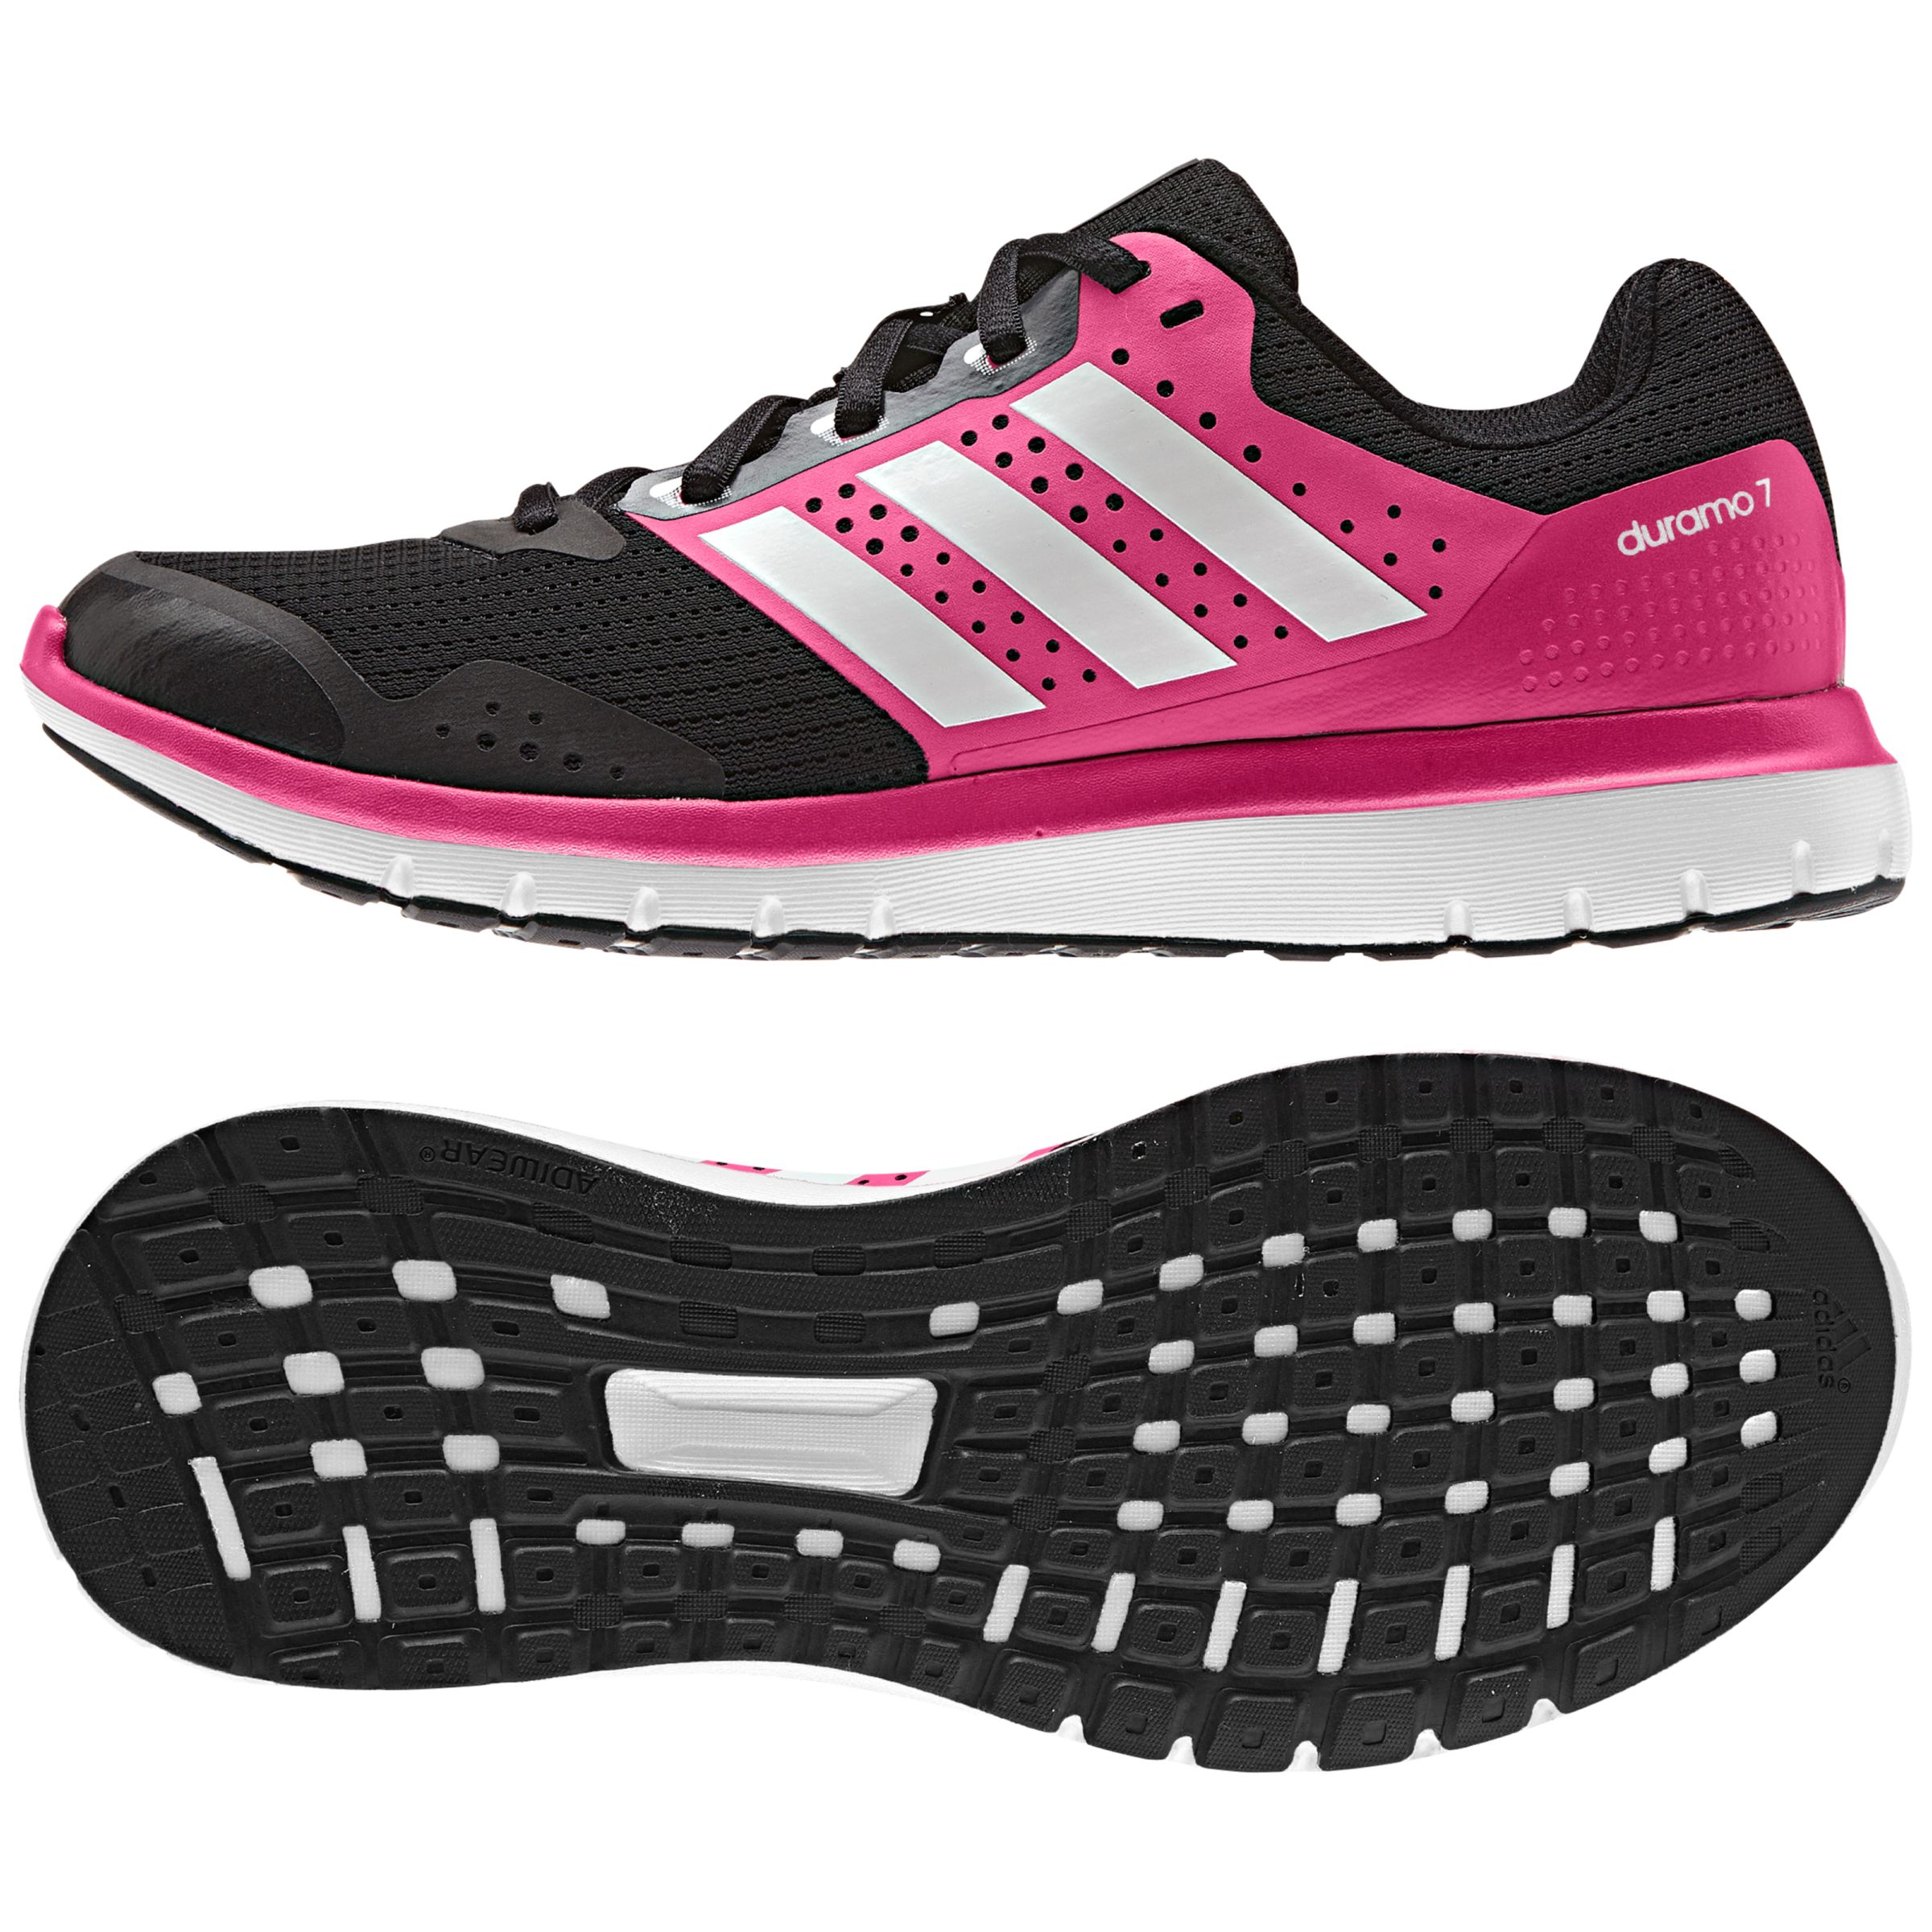 Adidas Duramo 7 Women's Running Shoes, Pink/Black at John Lewis \u0026 Partners